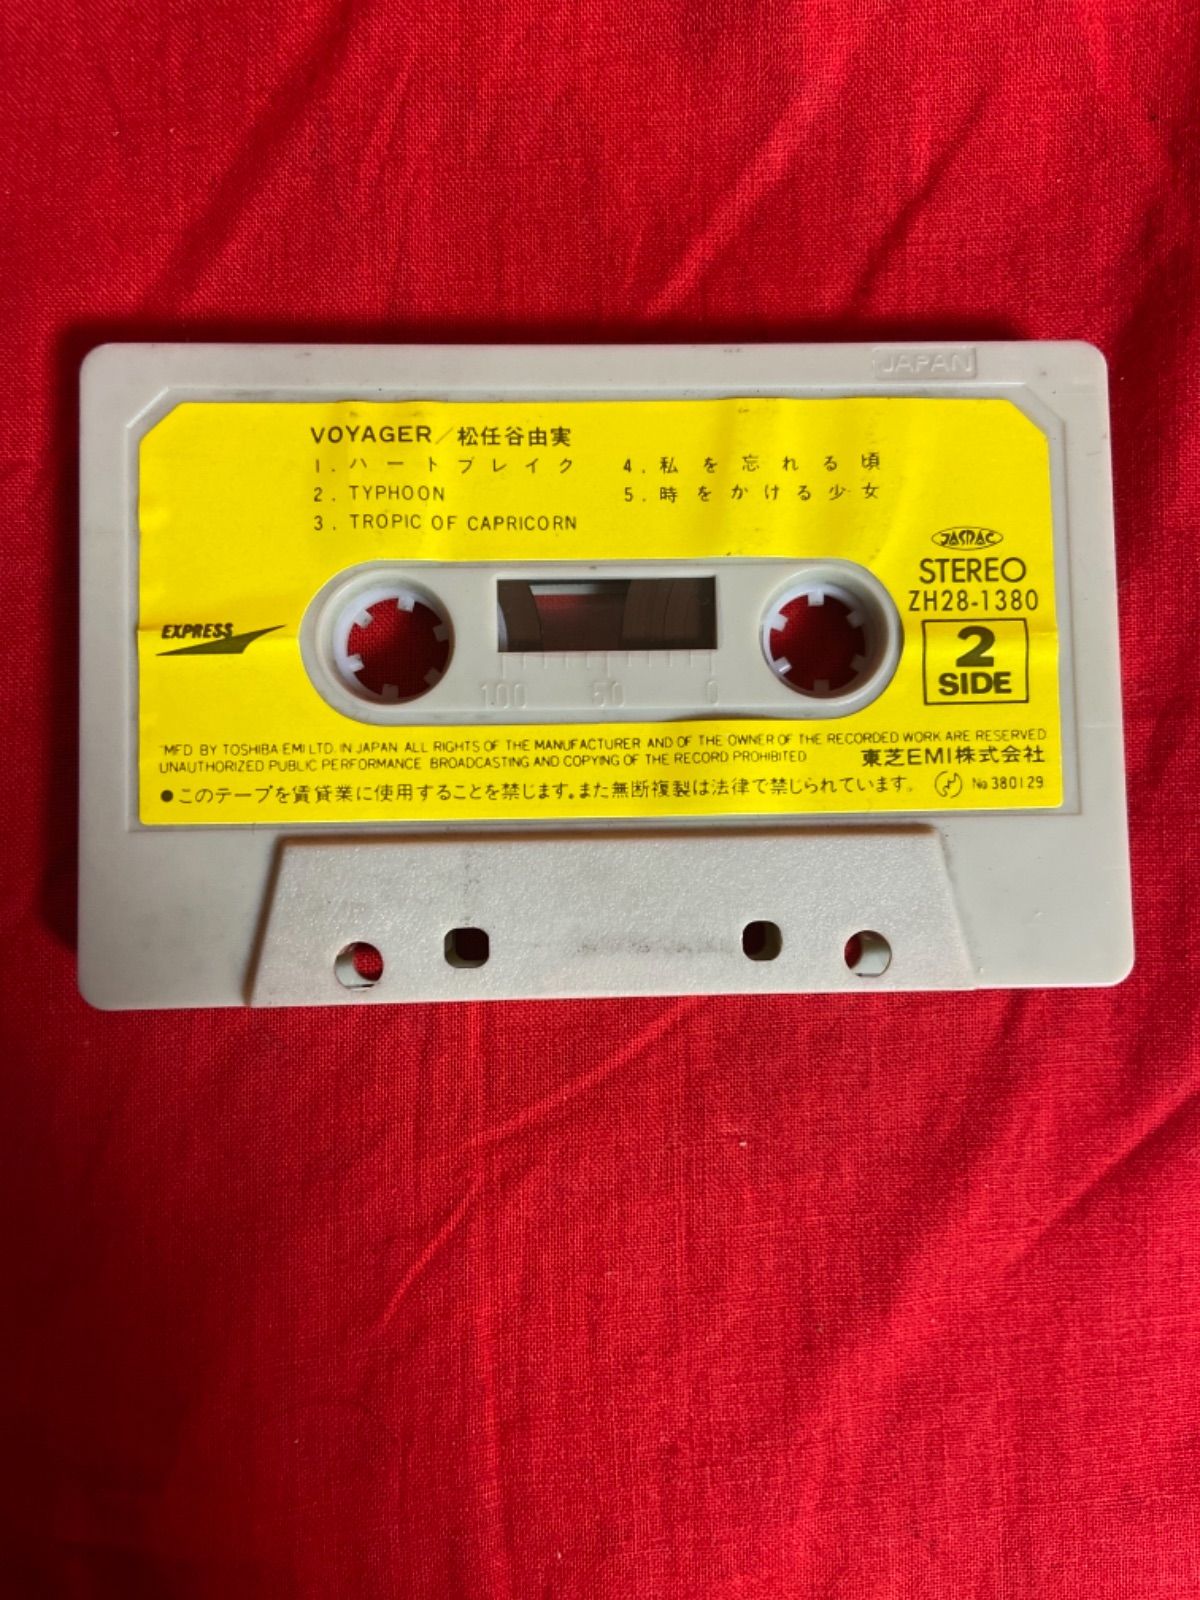 美品♥】松任谷由実 VOYAGER カセットテープ 歌詞カード付き - 邦楽